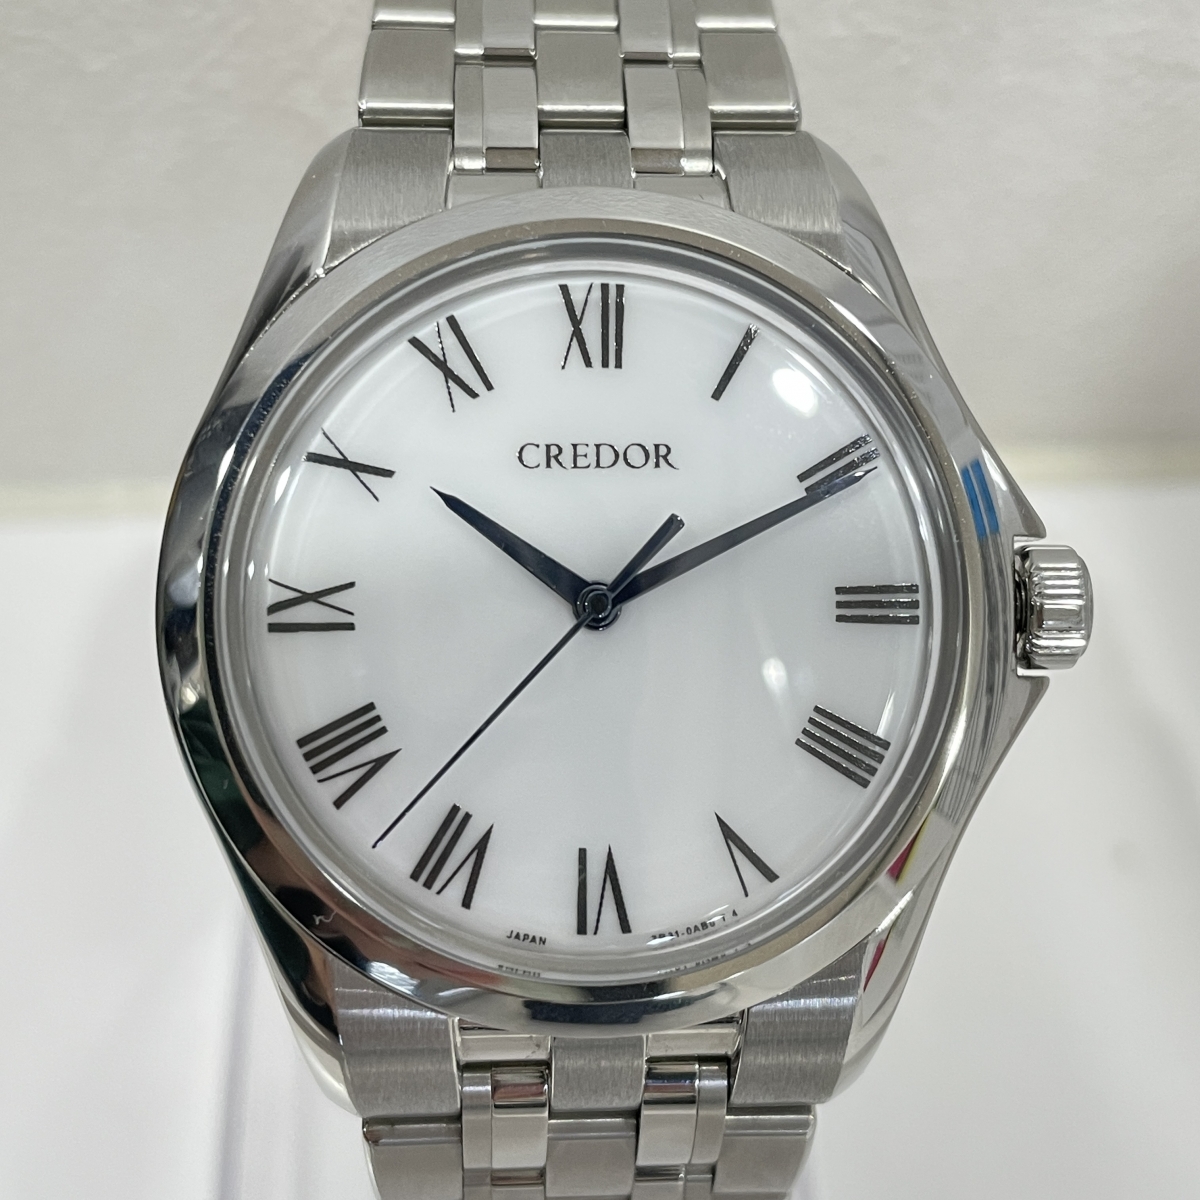 セイコーのクレドール シースルーバック 手巻き時計 クオン GCLX997の買取実績です。